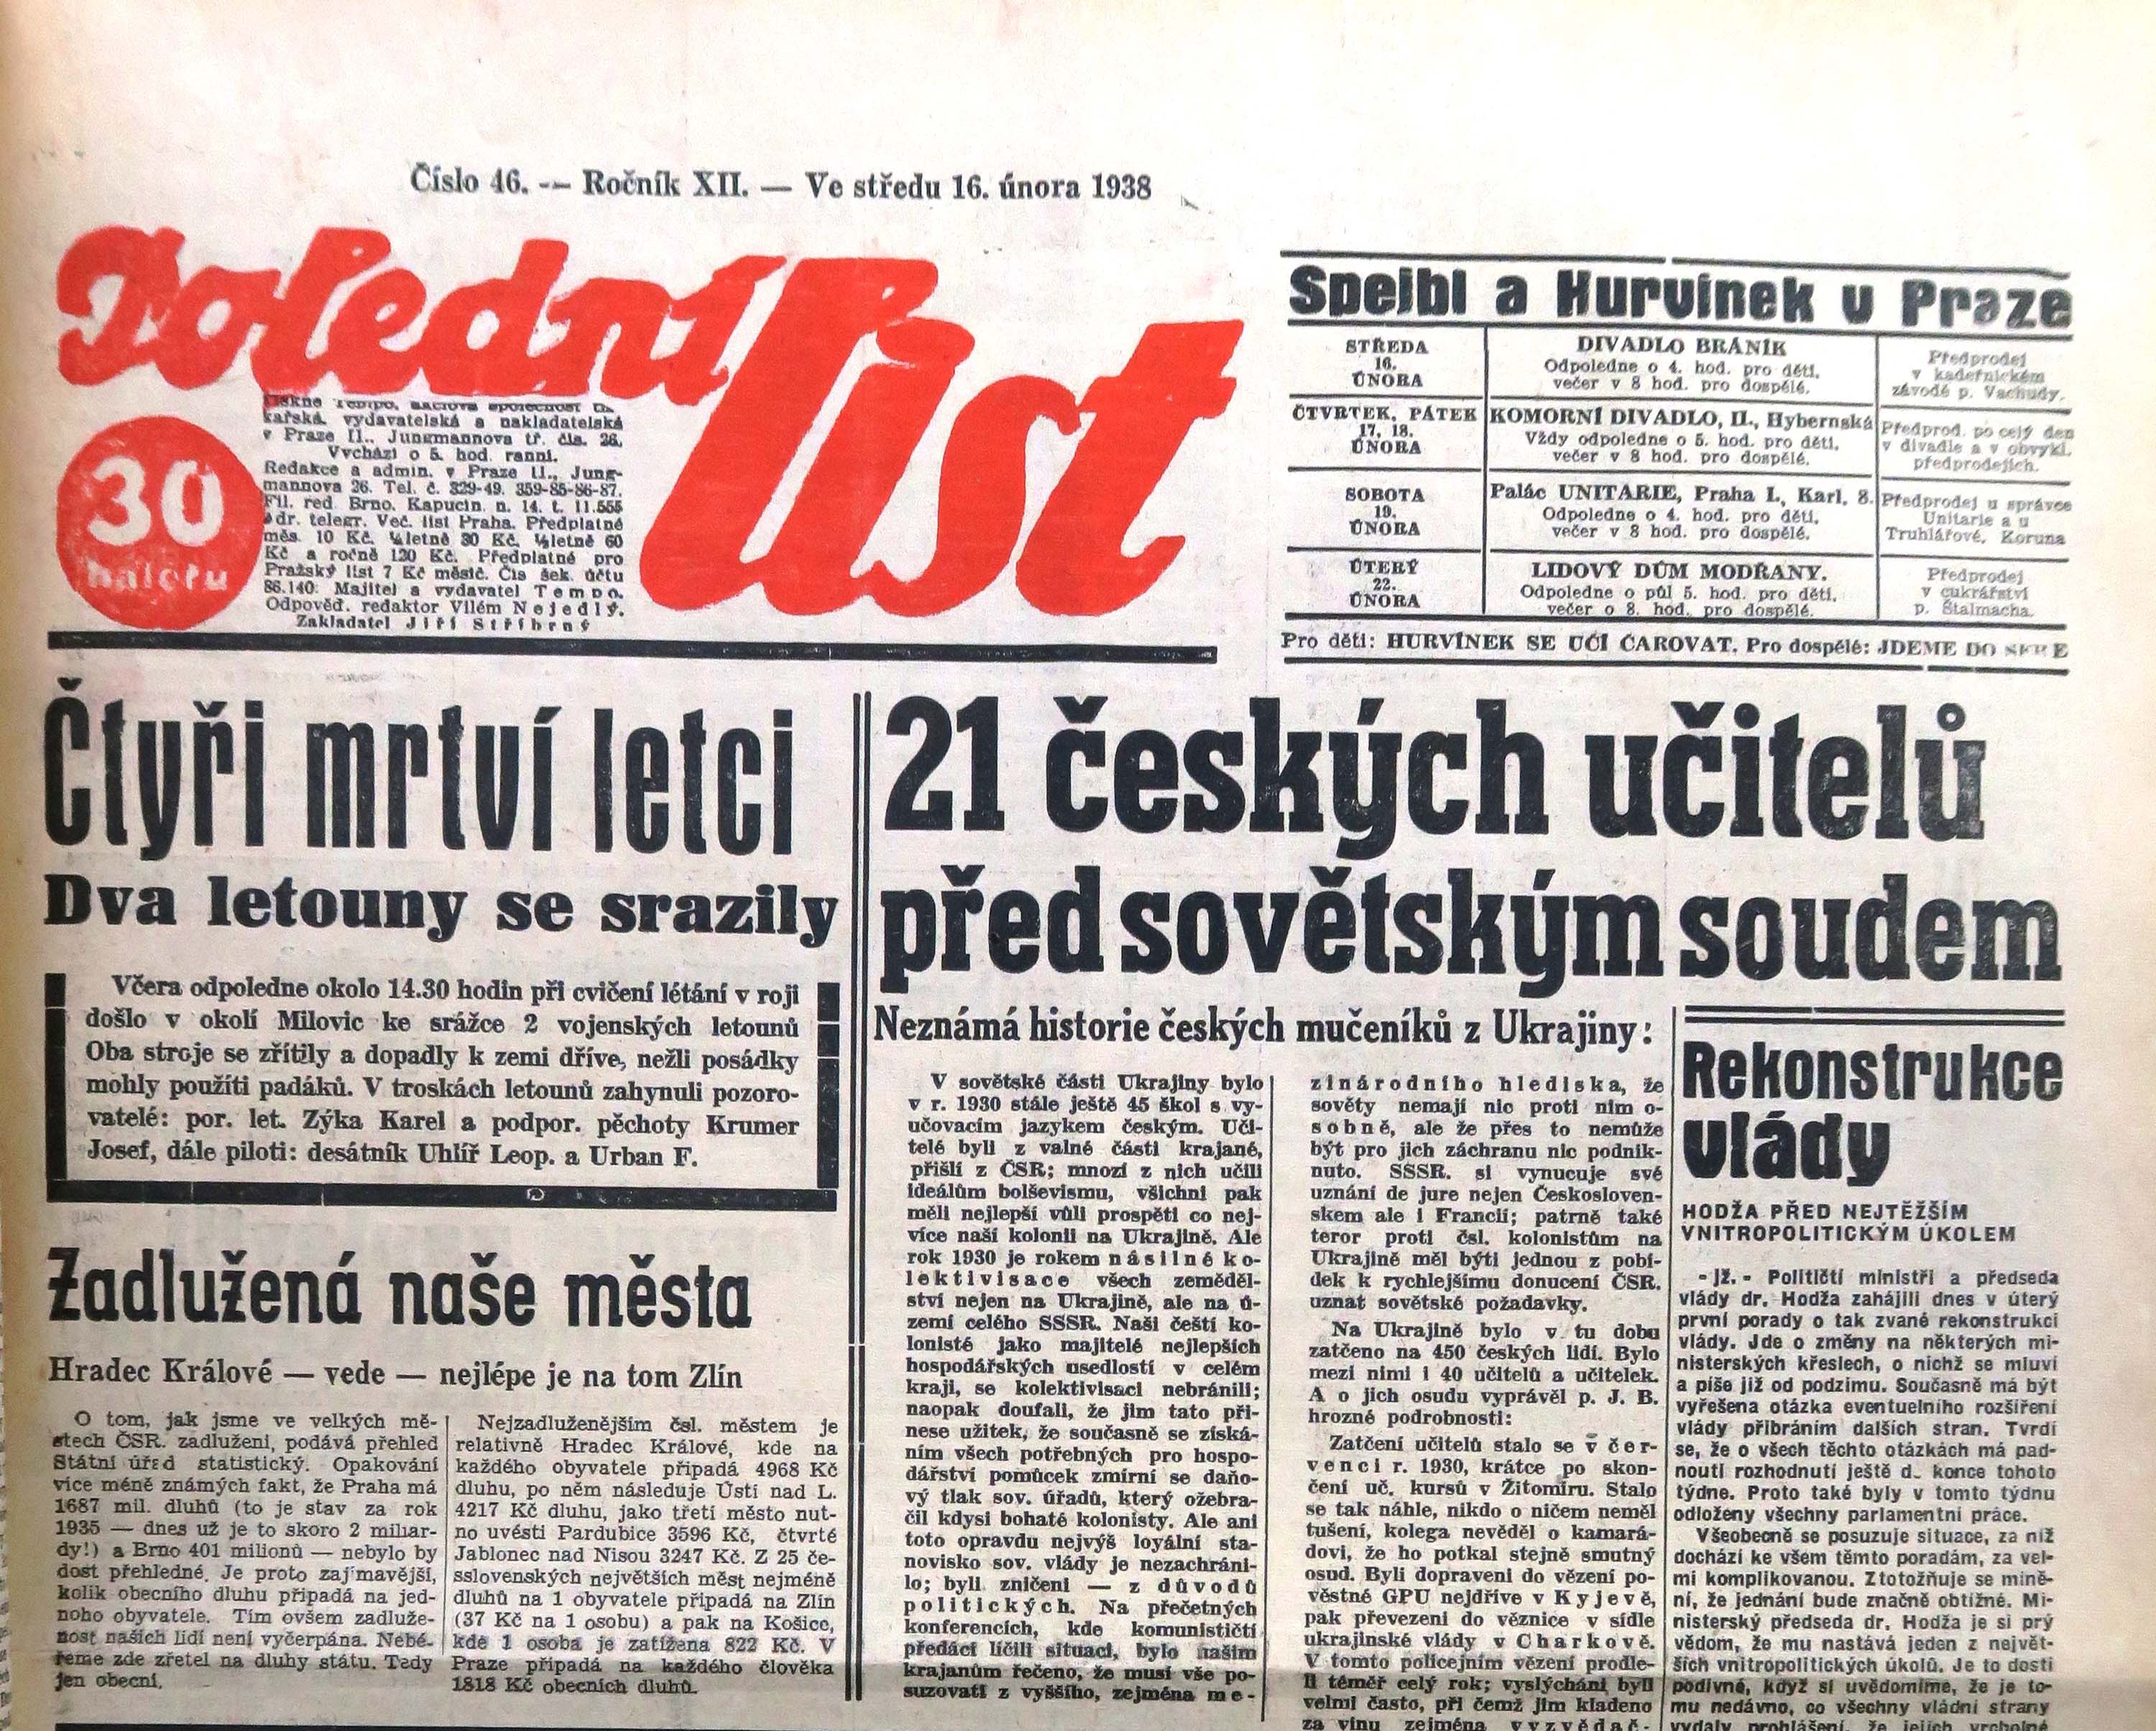 Článek o procesu s českými učiteli v Poledním listu z 16. února 1938 